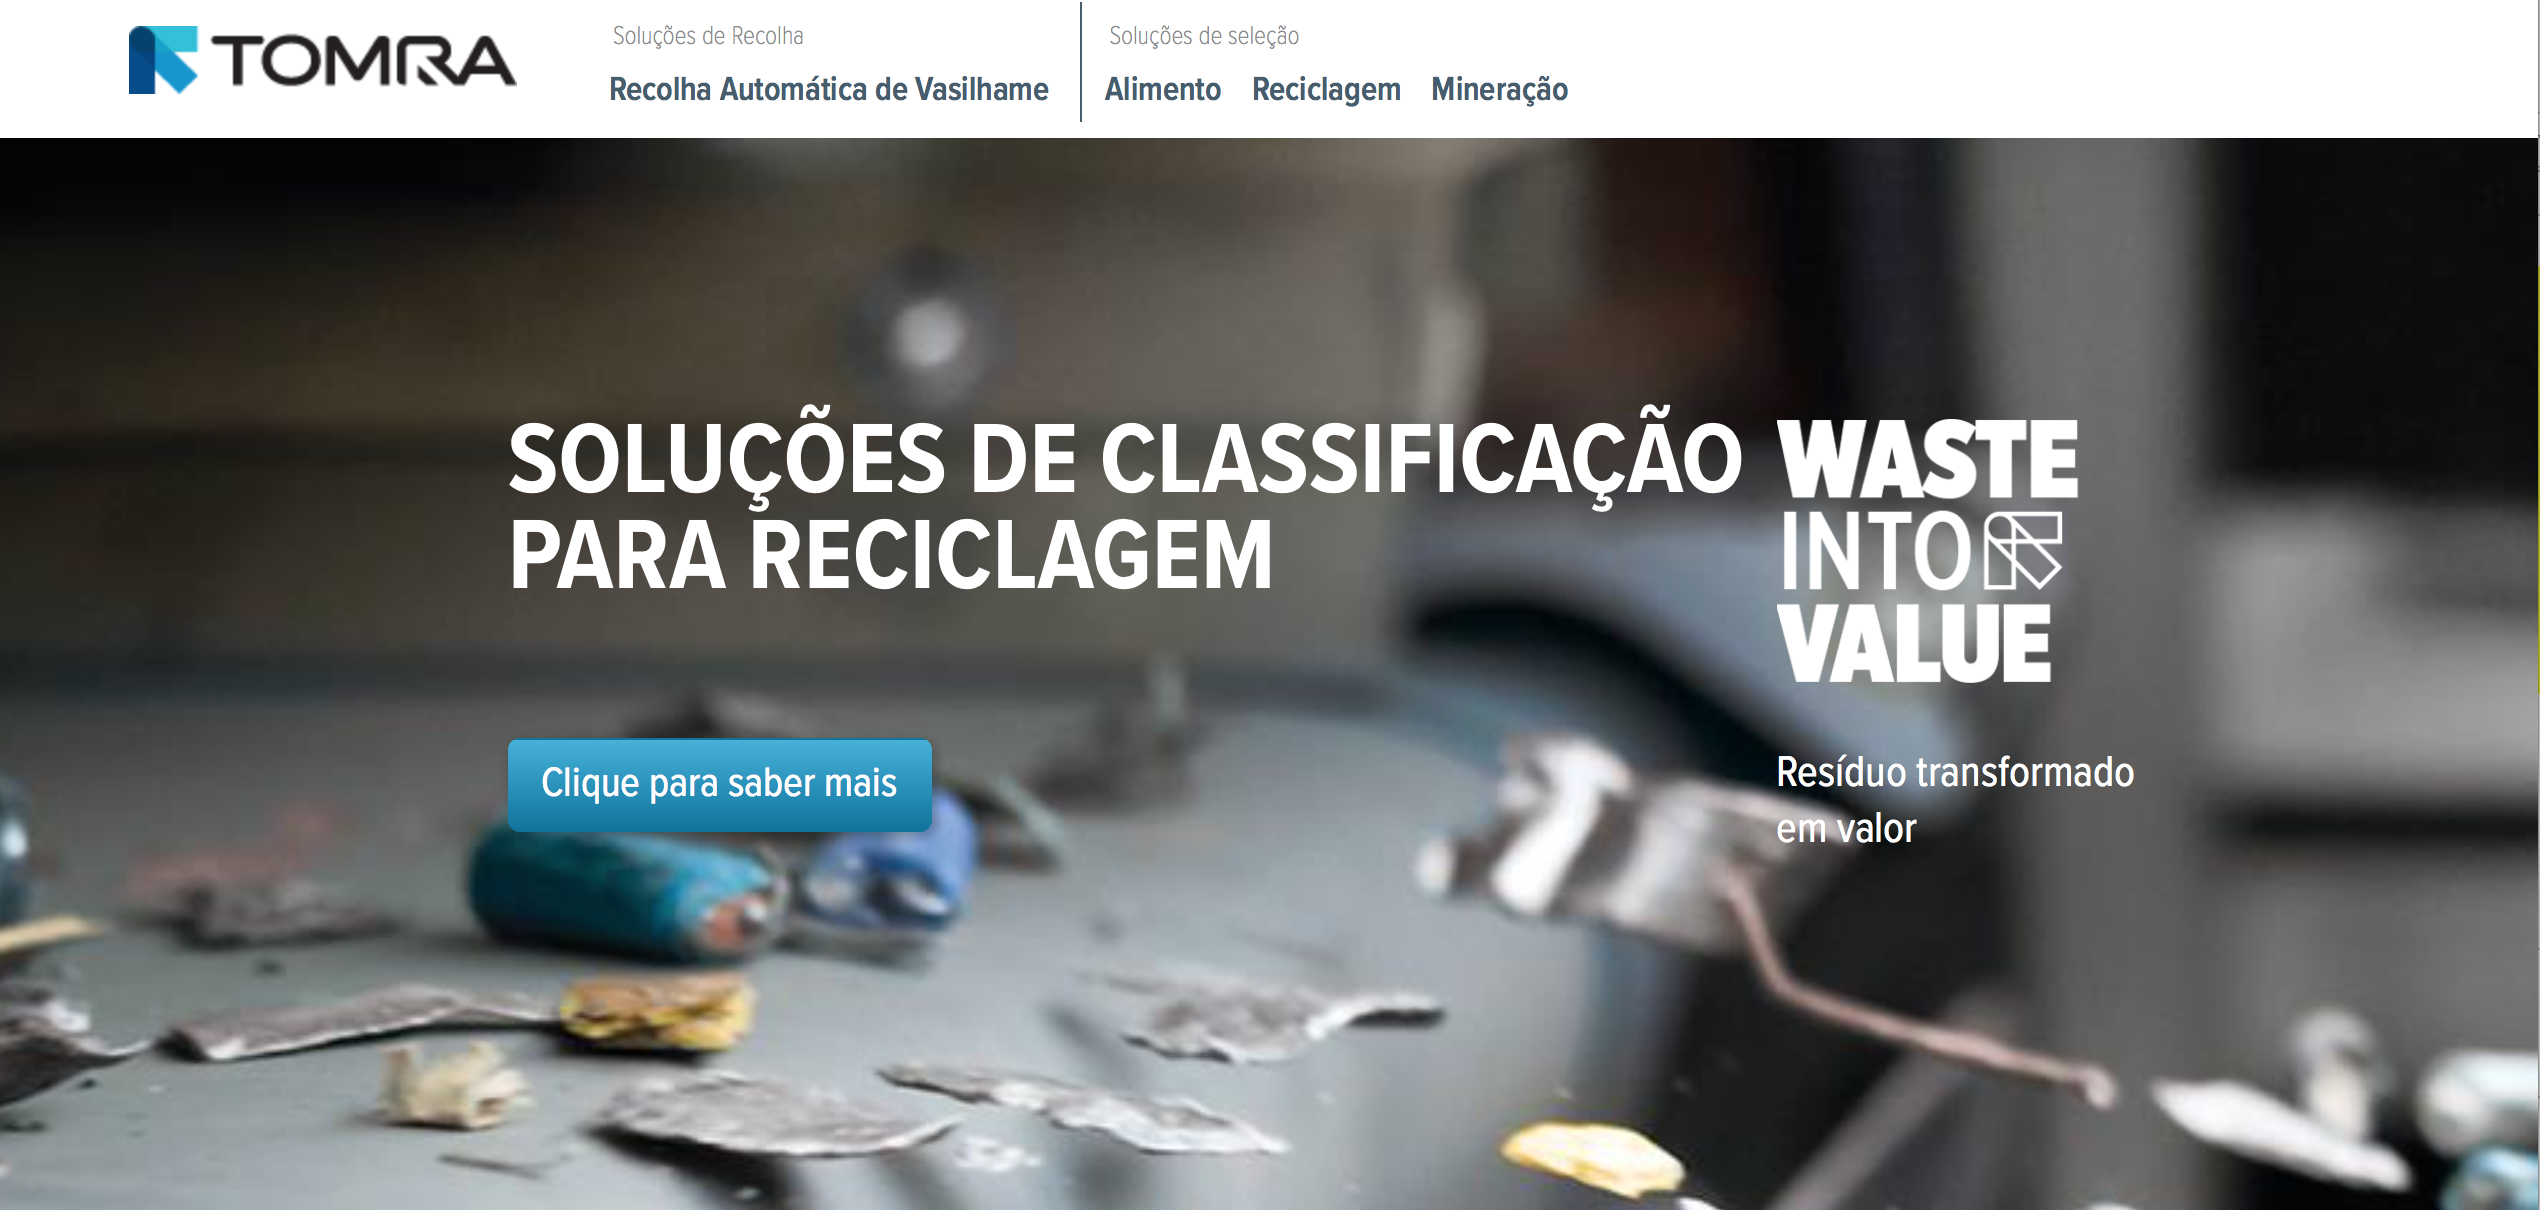 Visando aproximar-se dos clientes, a TOMRA lança o seu website para o mercado brasileiro